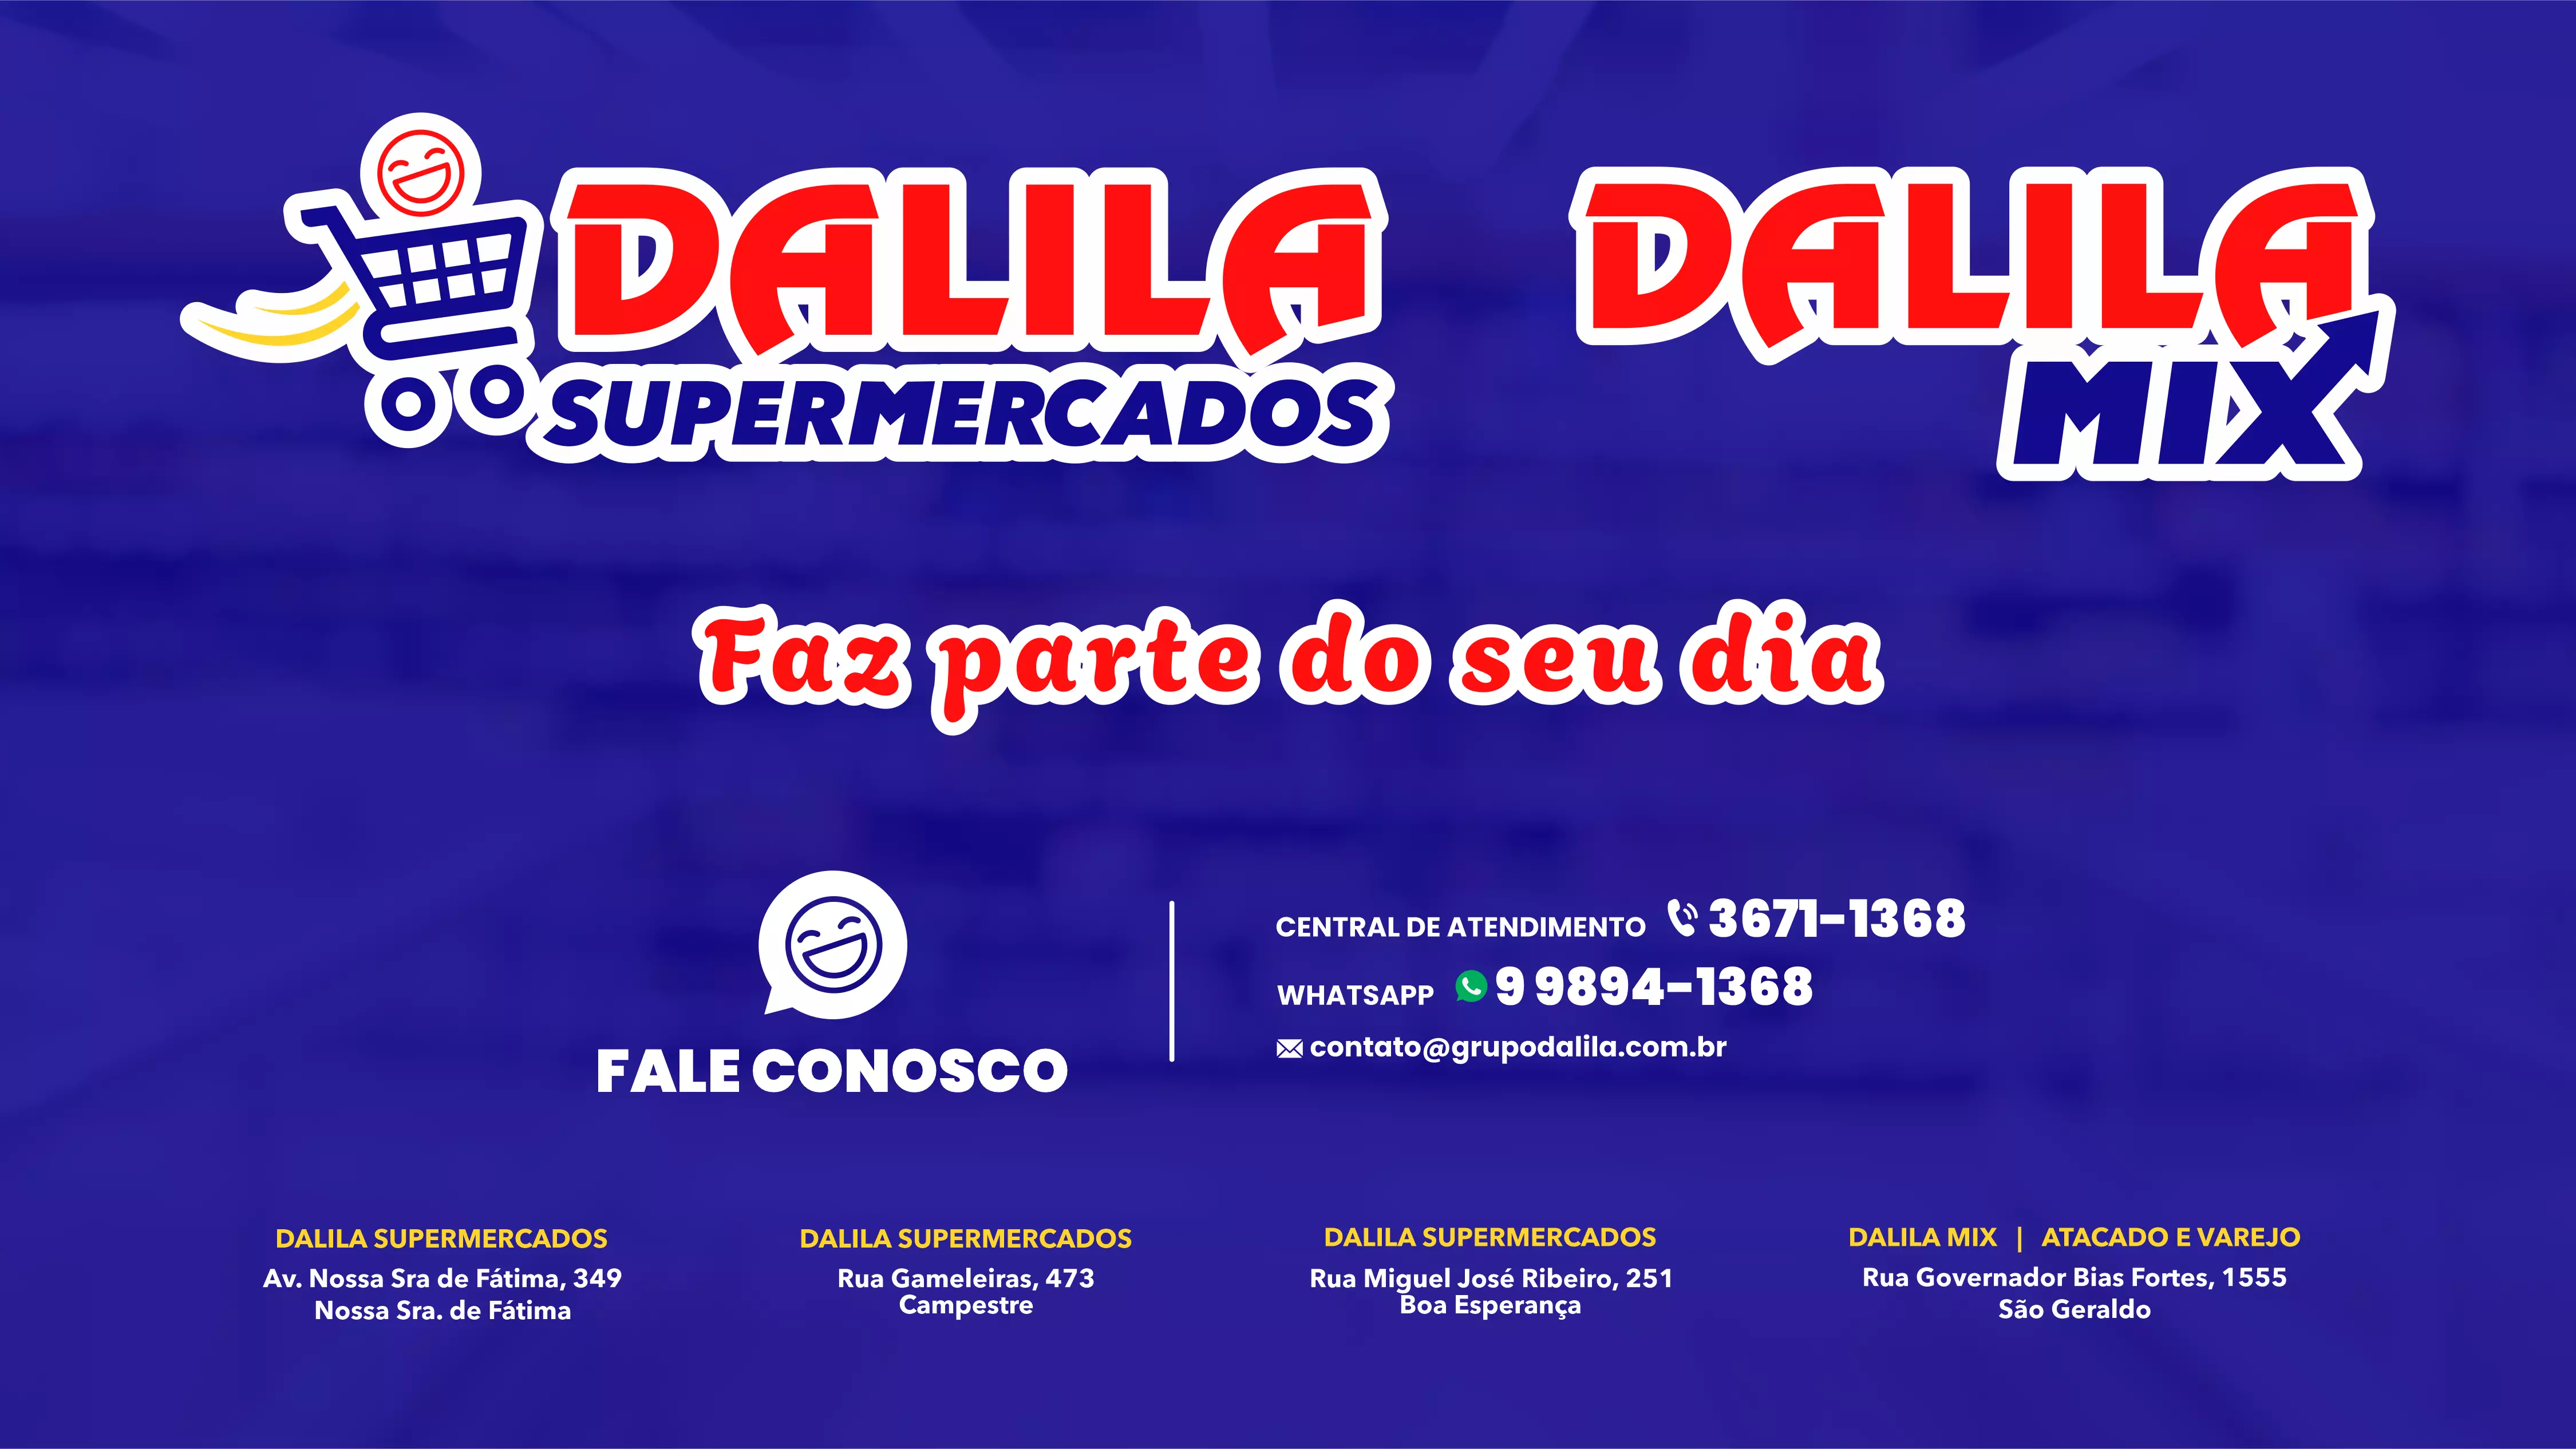 Dalila Supermercados e Dalila Mix - Faz parte do seu dia